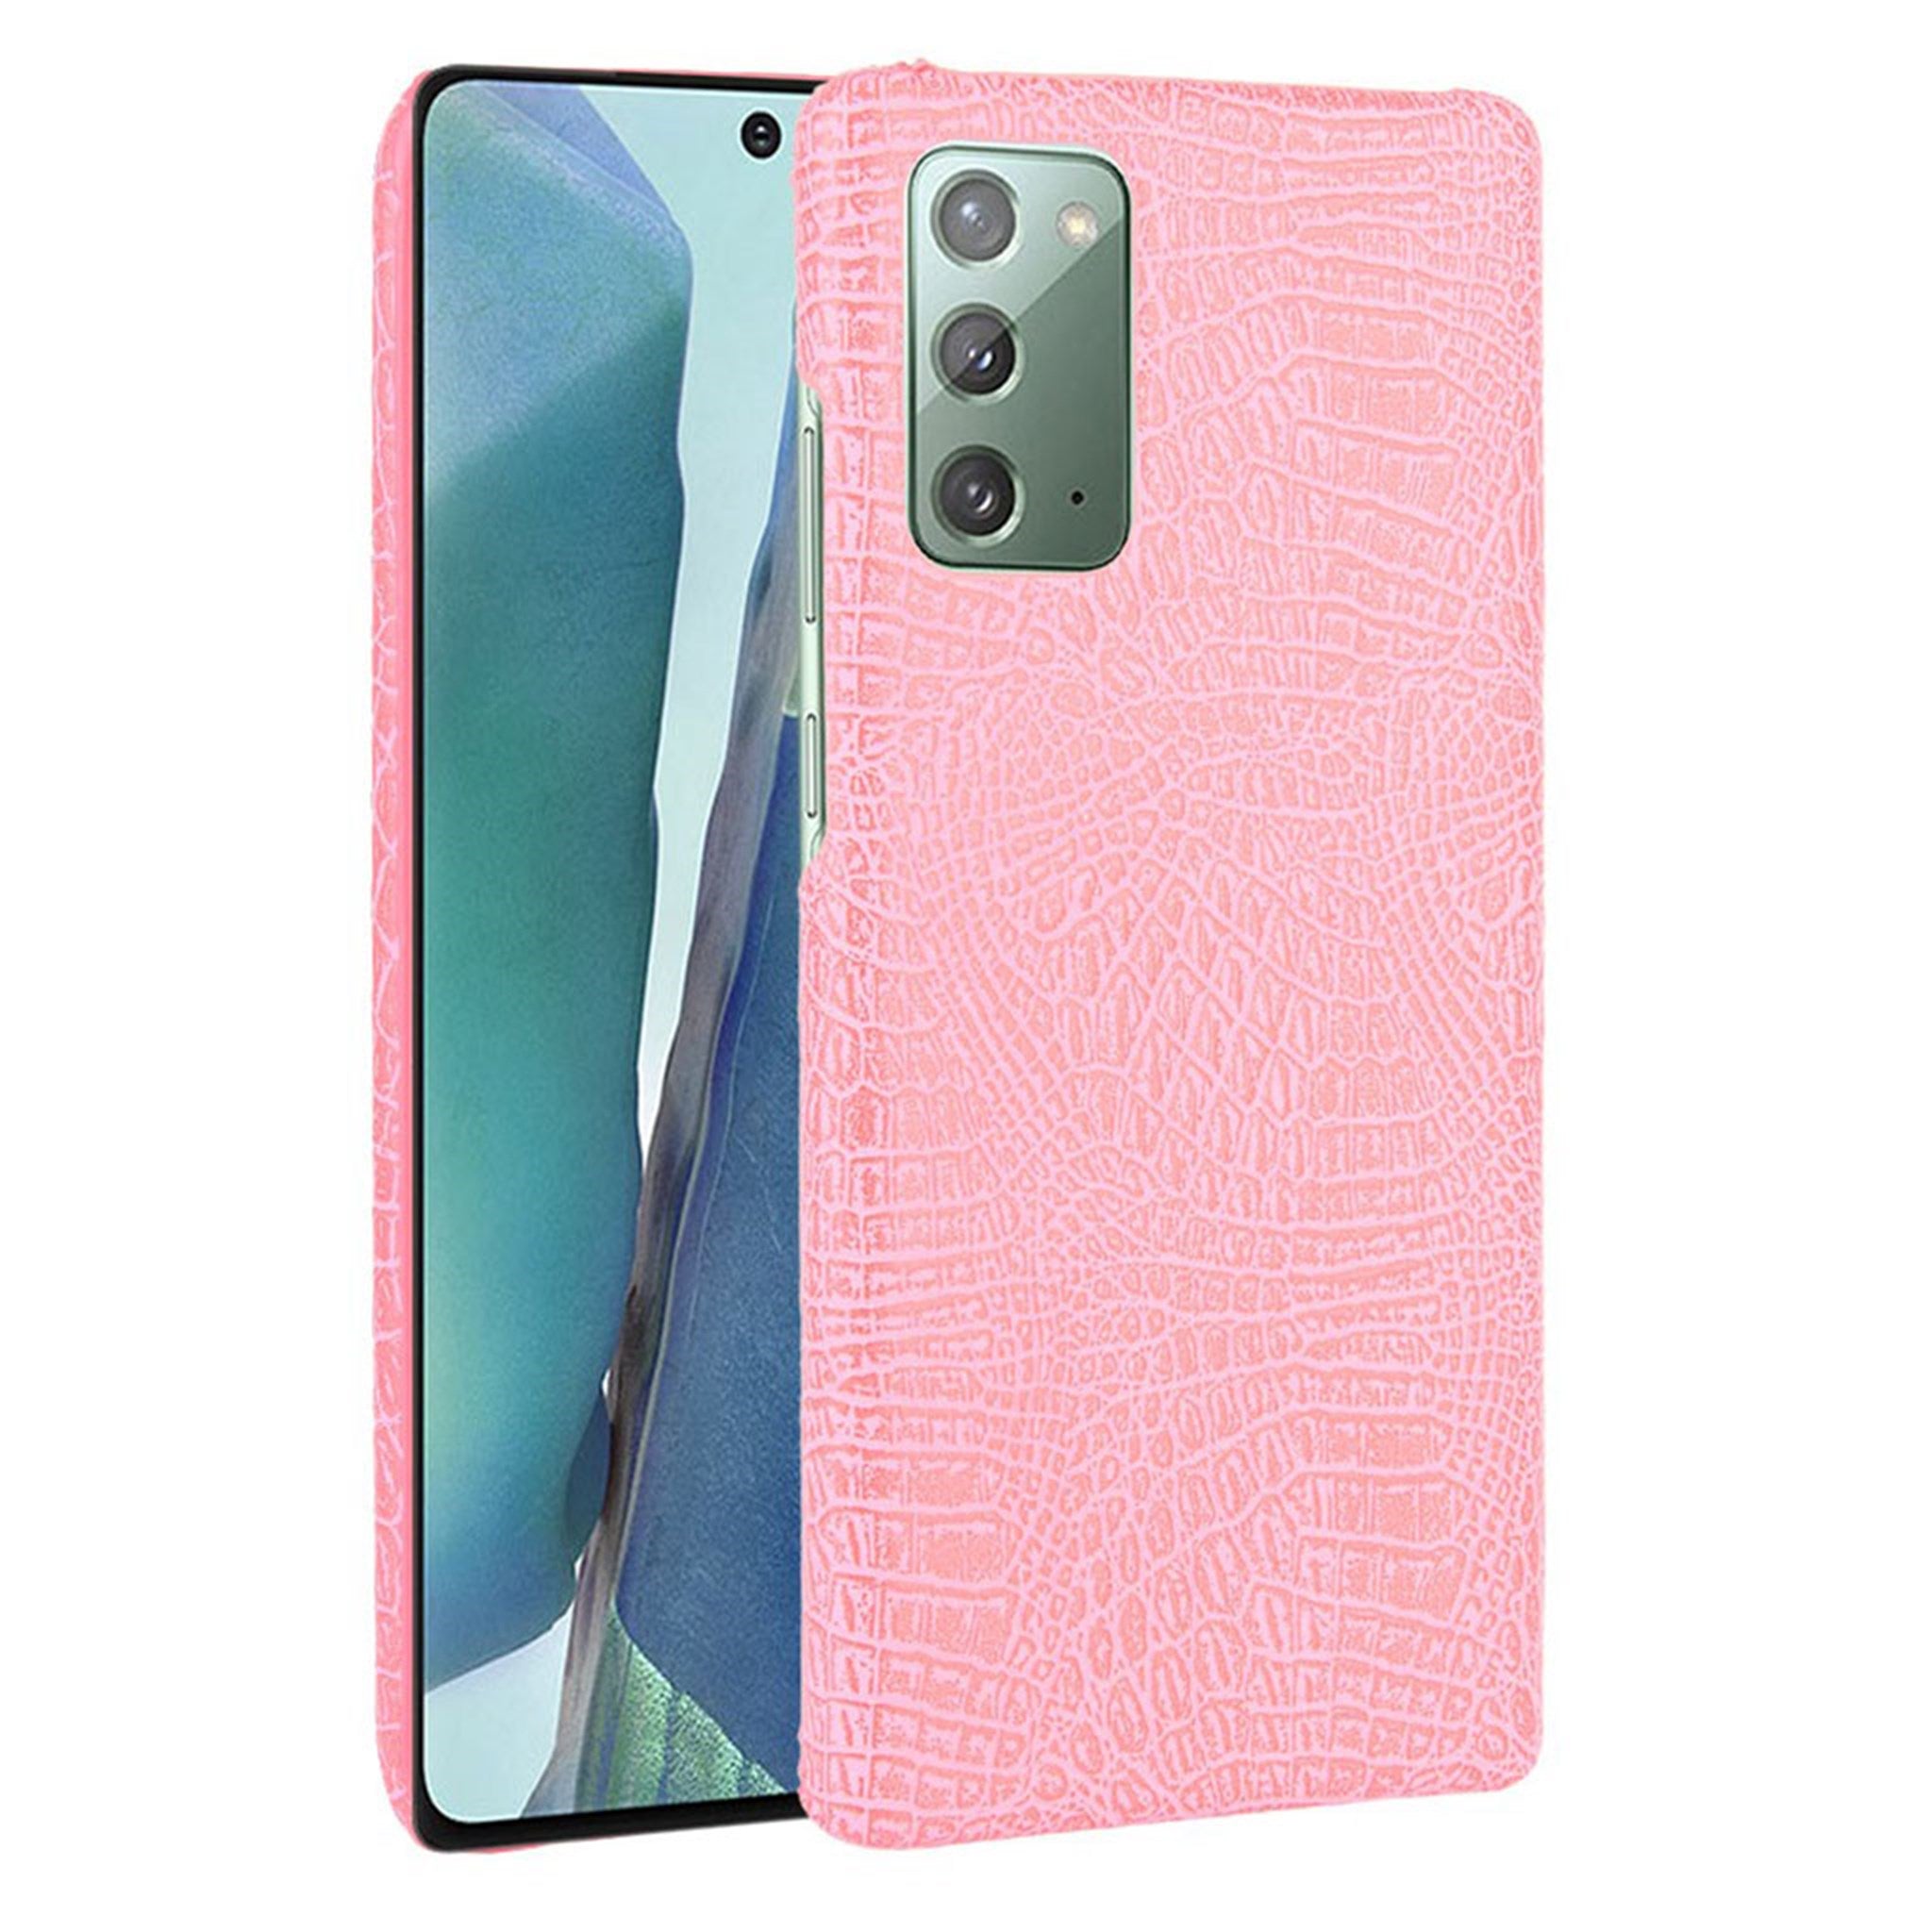 Croco case - Samsung Galaxy Note 20 - Pink